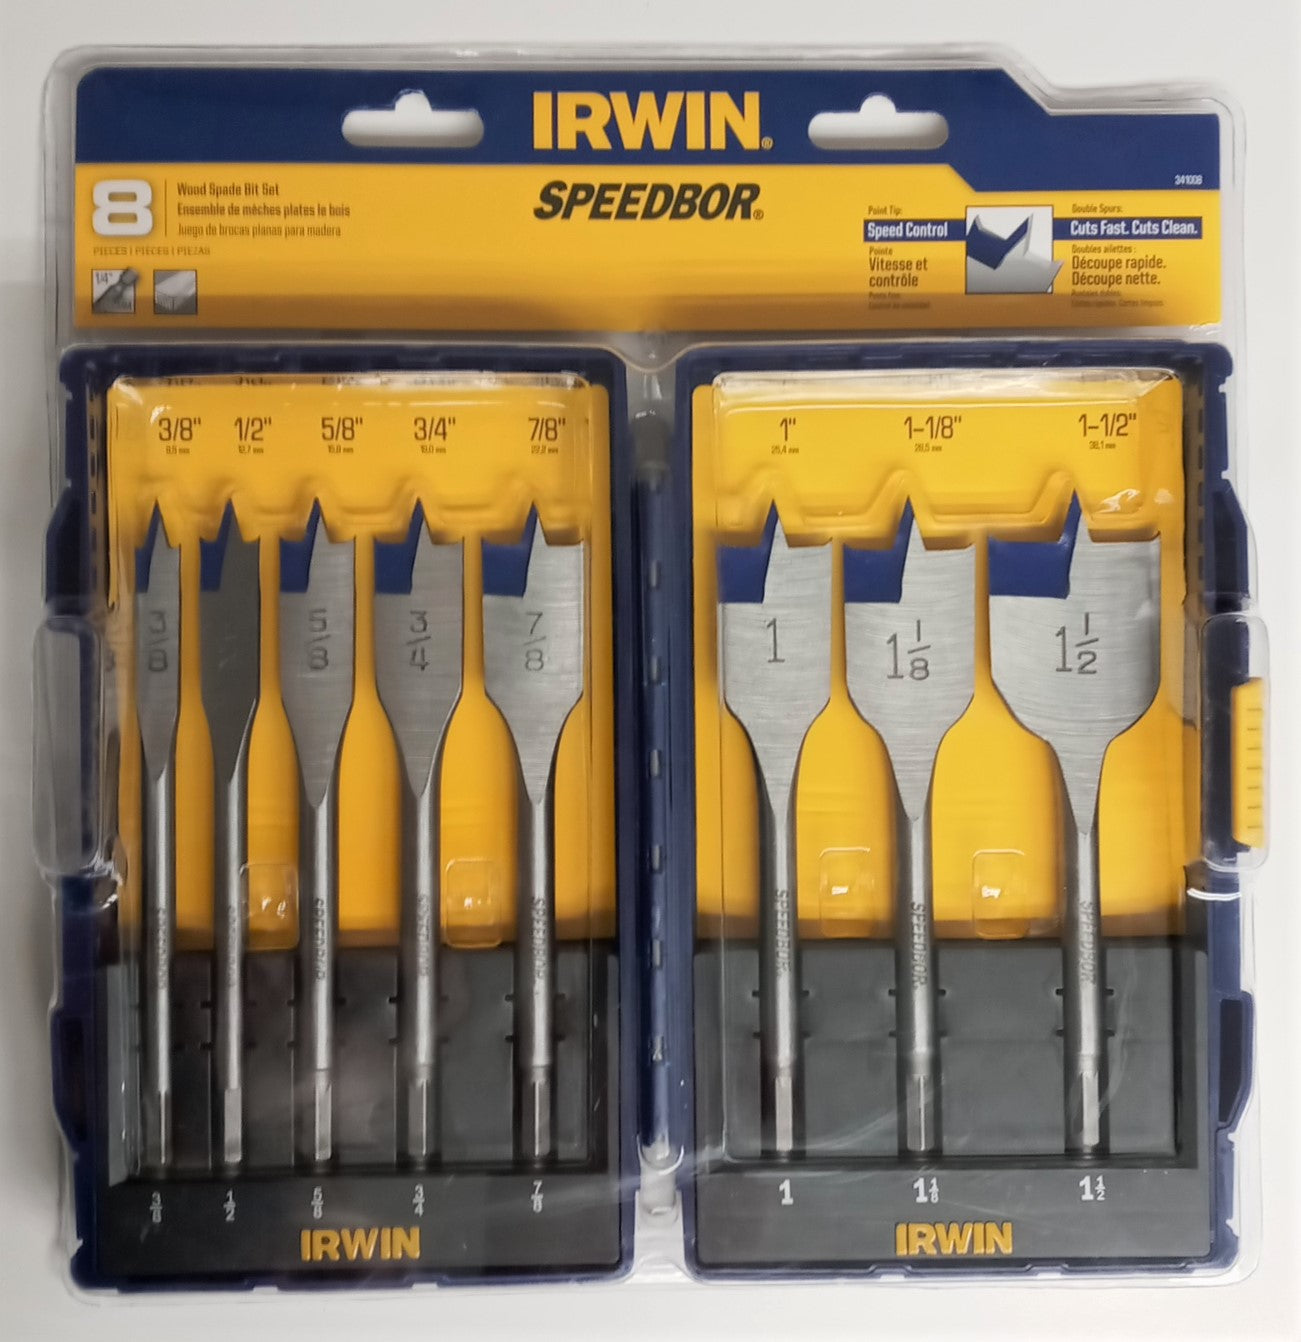 Irwin 341008 Piece Speedbor Spade Drill Bit Set 3/8" to 1/2"